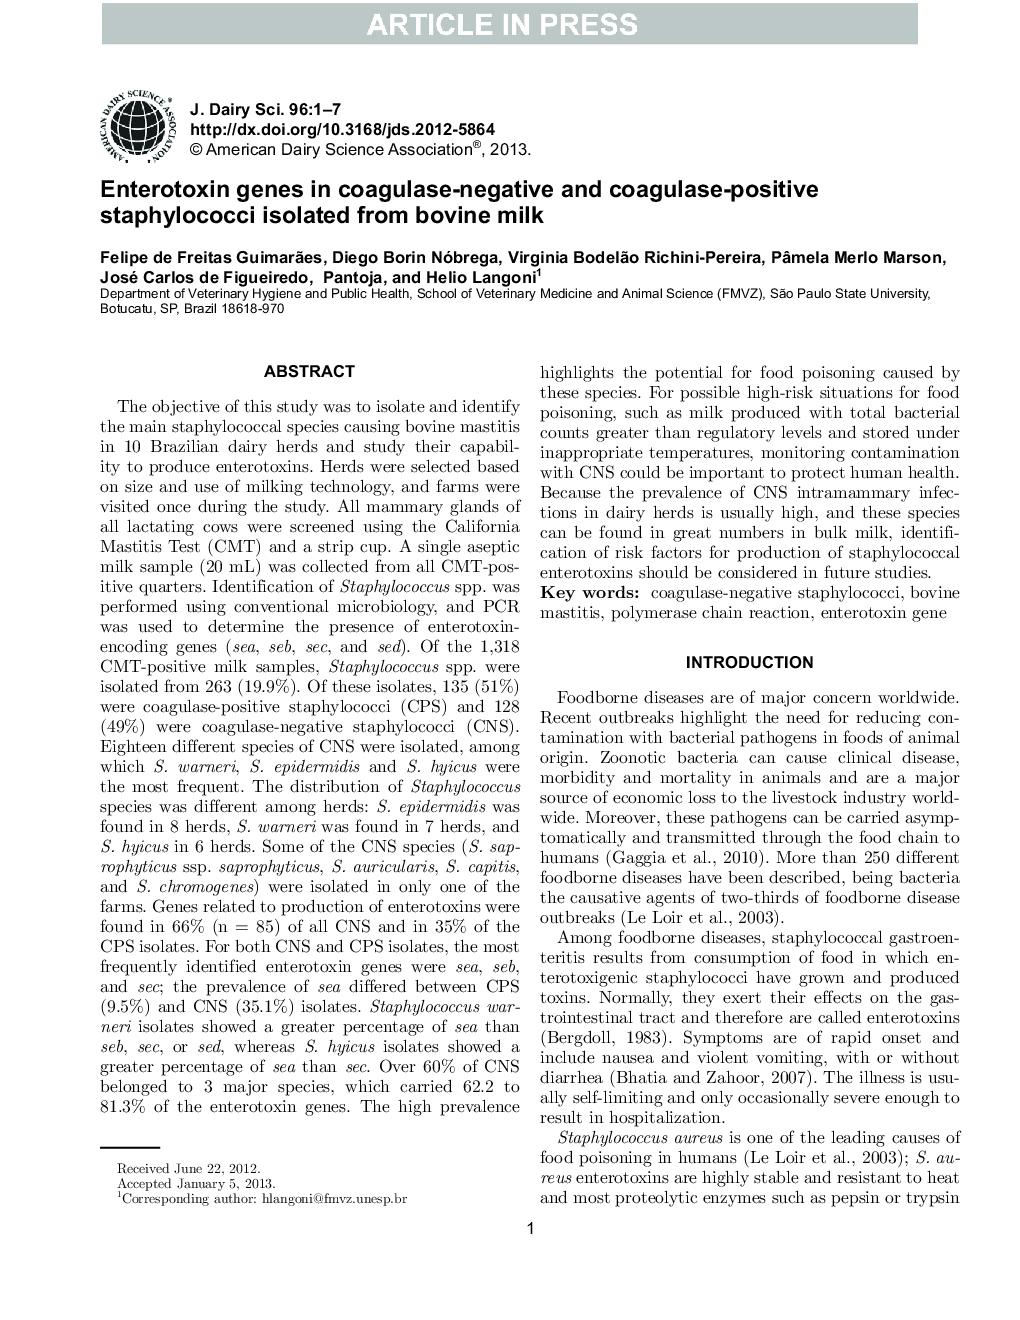 ژن انتروتوکسین در استافیلوکوک های مثبت کوآگولاز منفی و کوآگولاز جدا شده از شیر گاو 